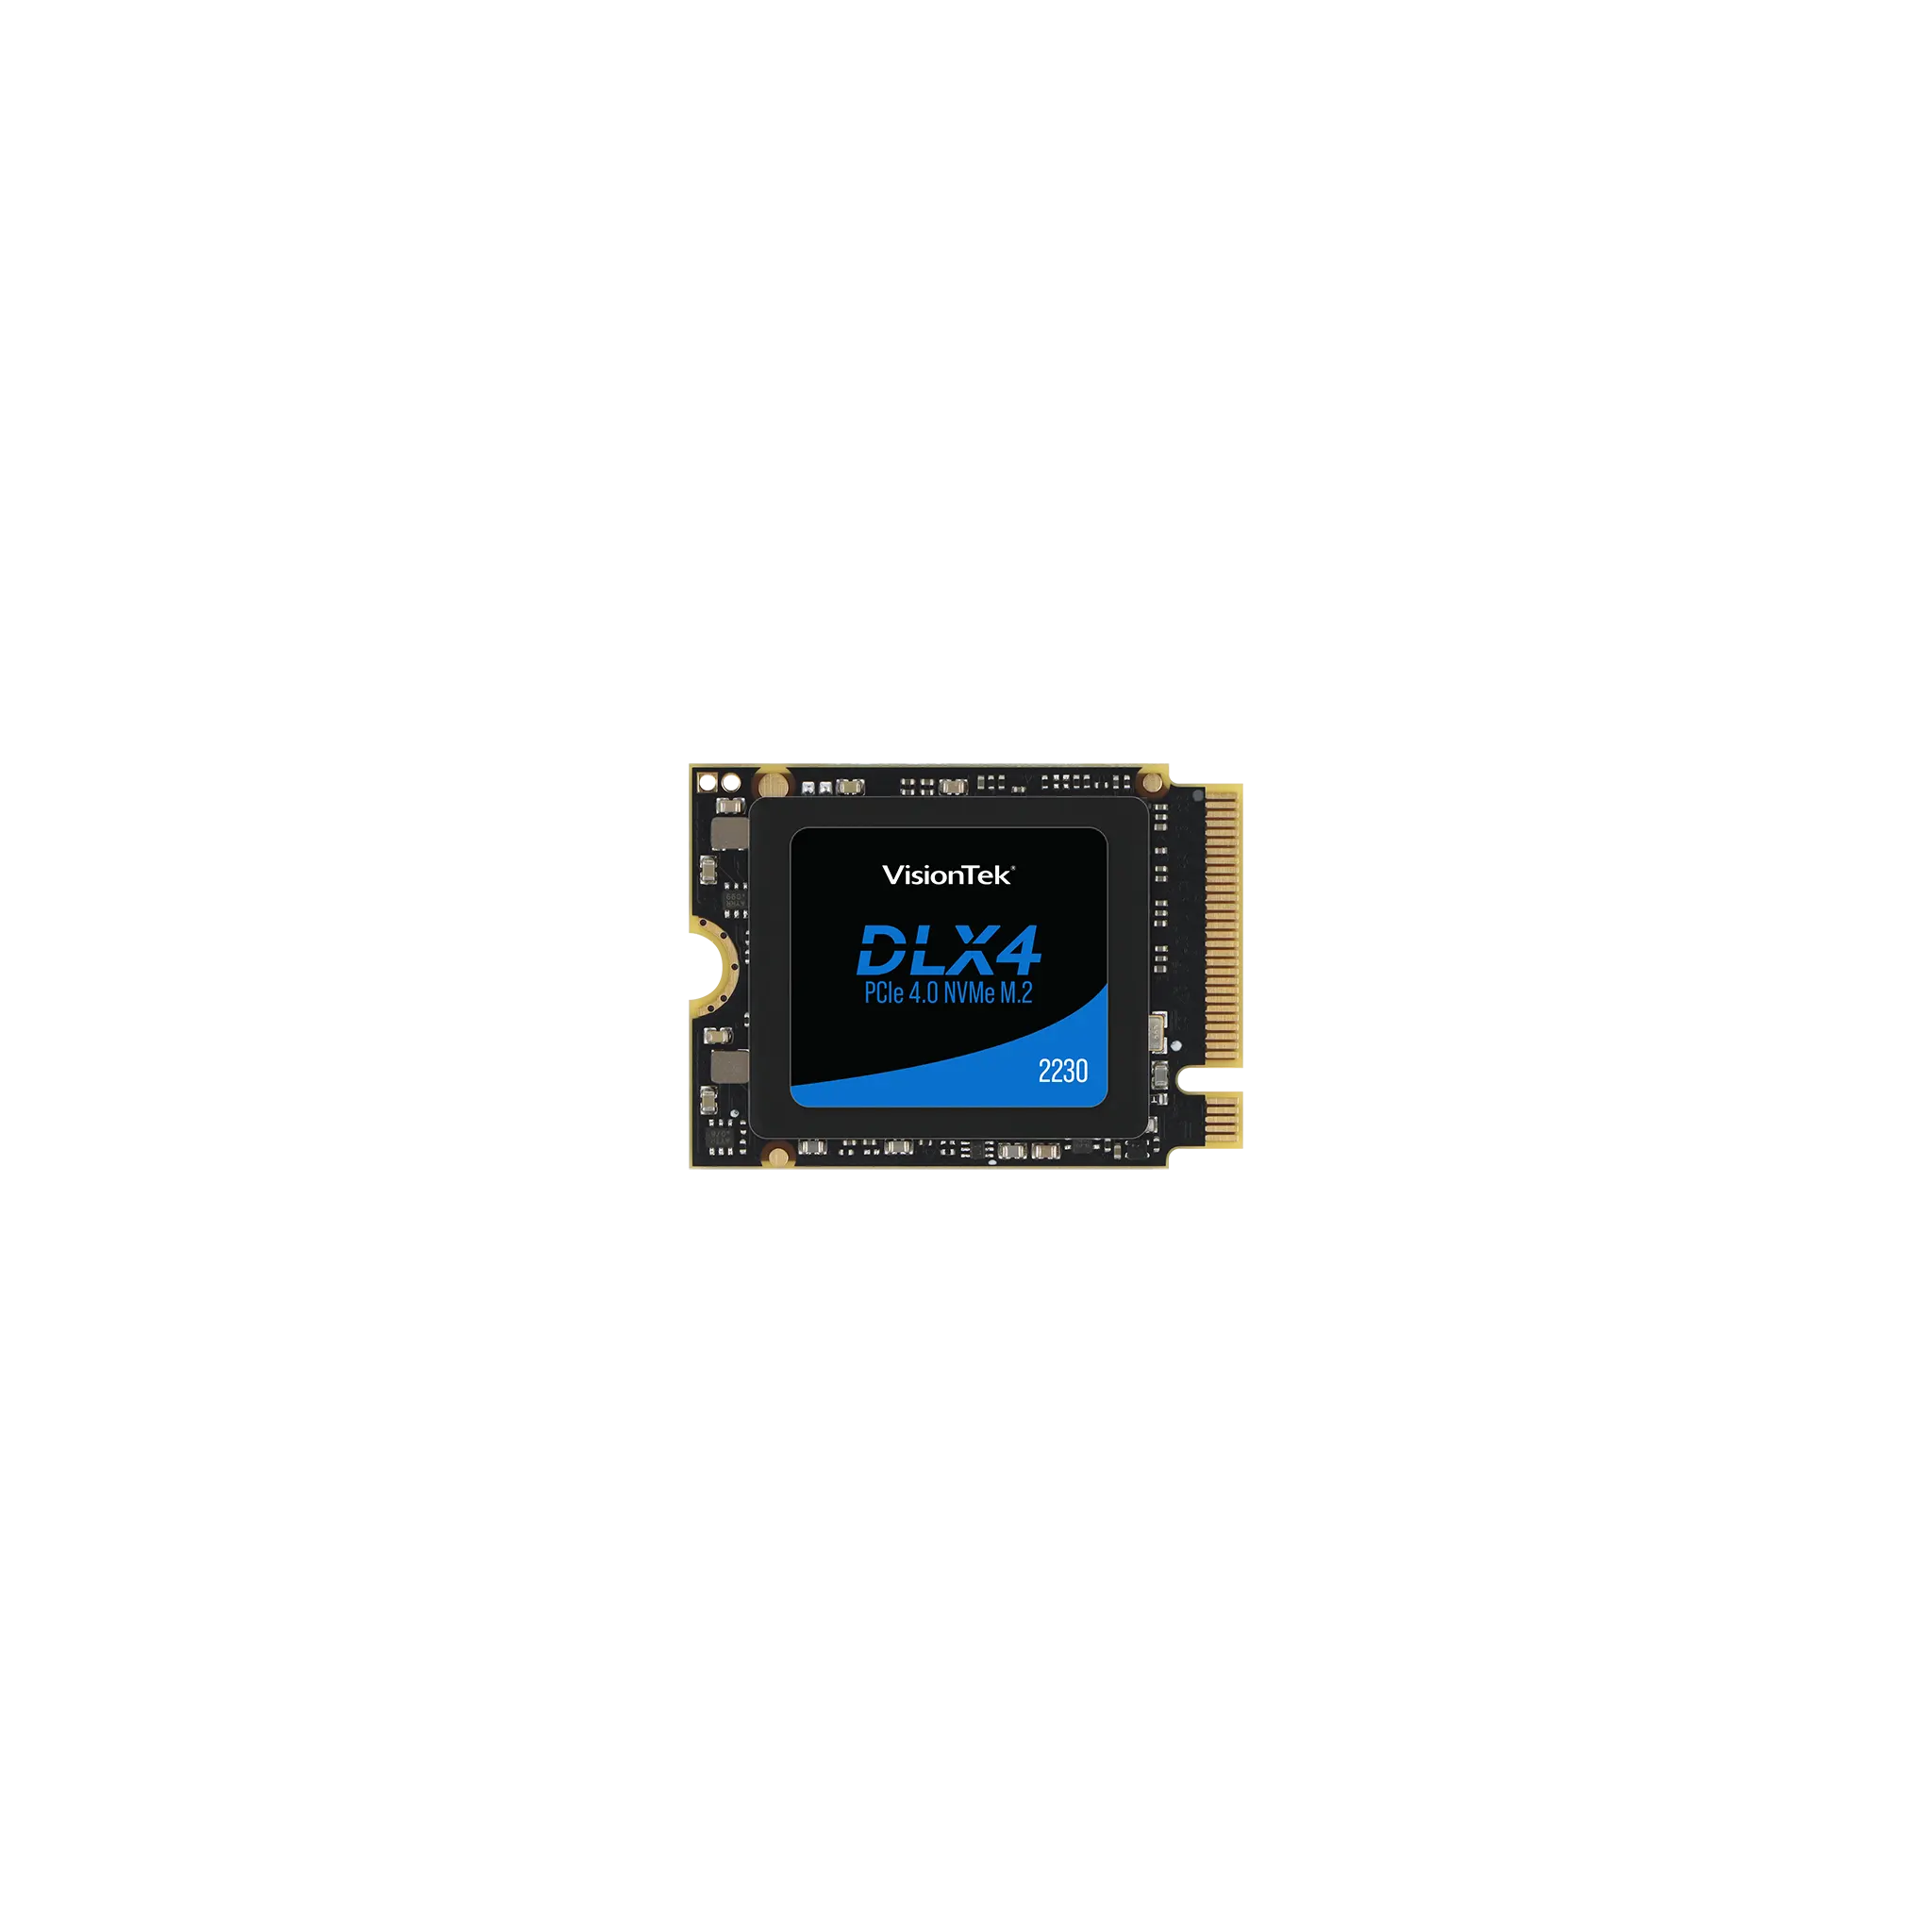 VisionTek DLX4 2230 M.2 PCIe 4.0 x4 SSD (NVMe) – VisionTek.com